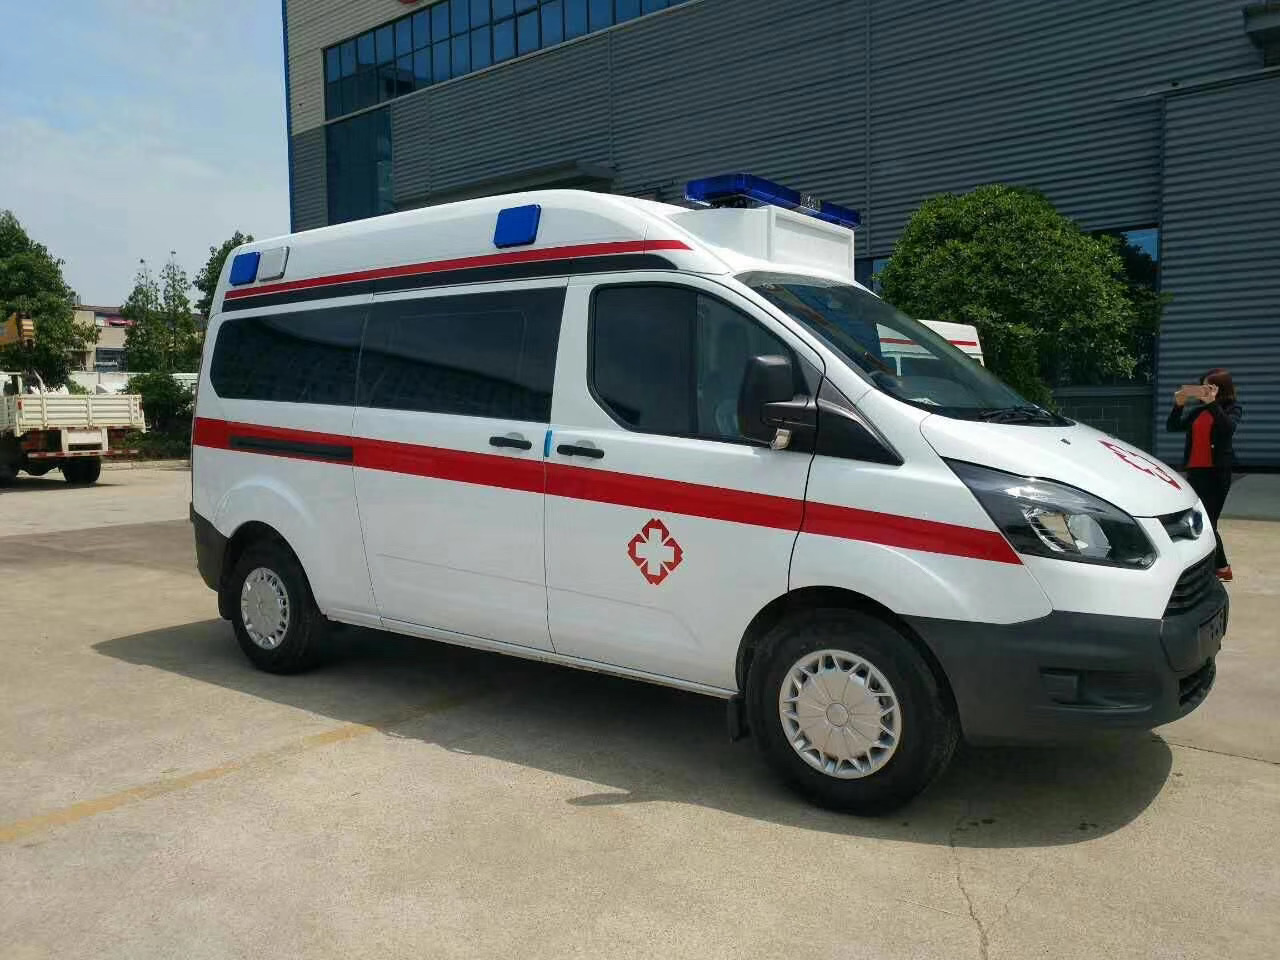 巴东县出院转院救护车